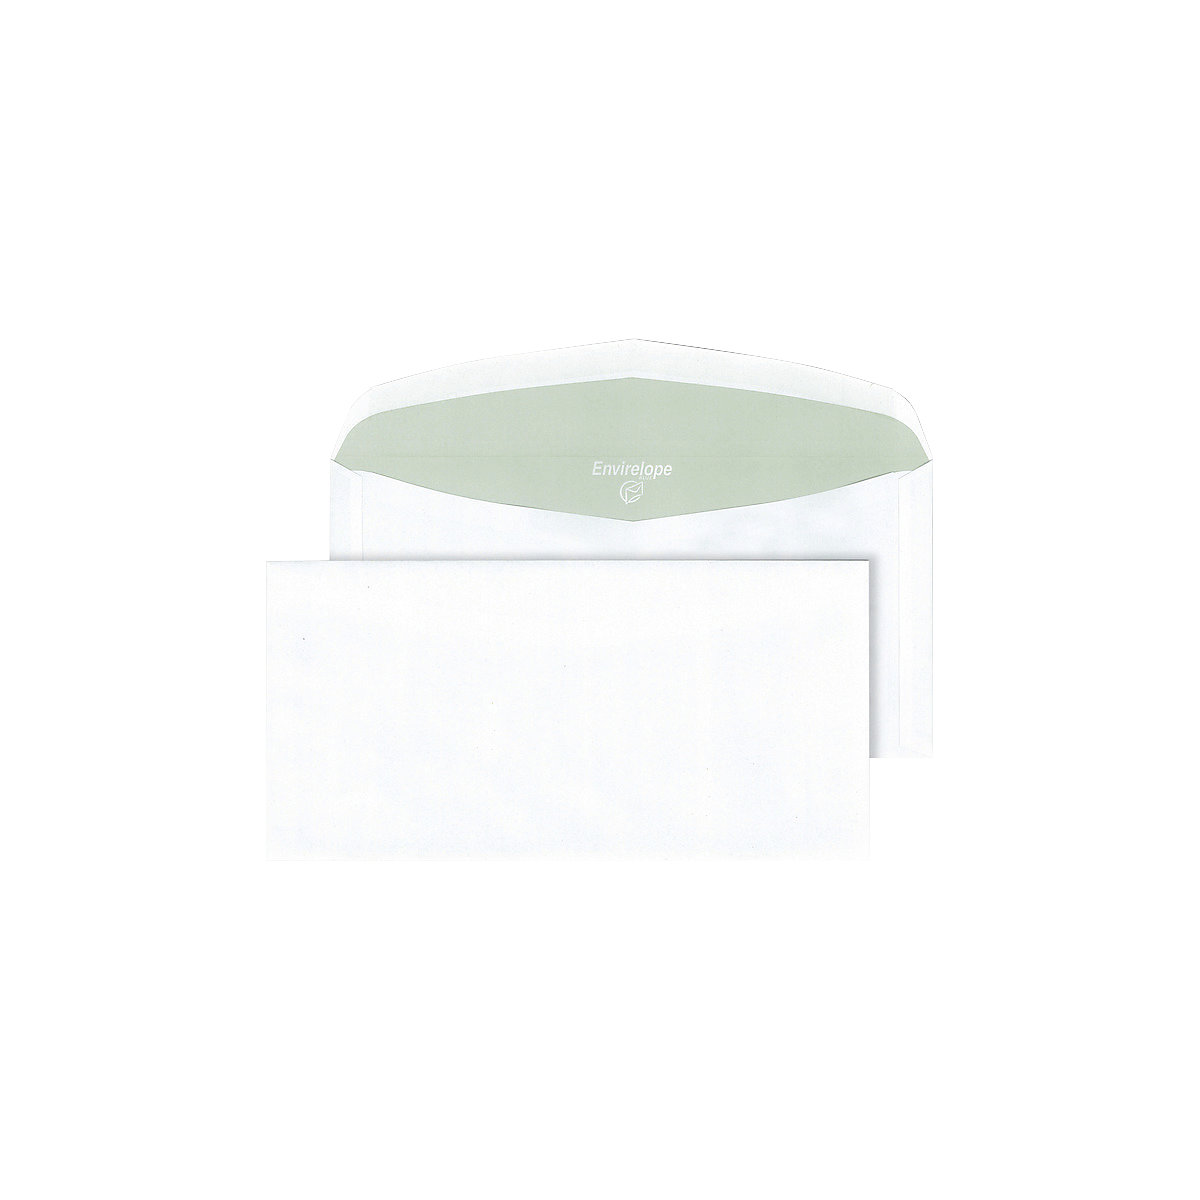 Briefumschläge Envirelope® terra, weiß, Format C6 / C5, VE 1000 Stk-2